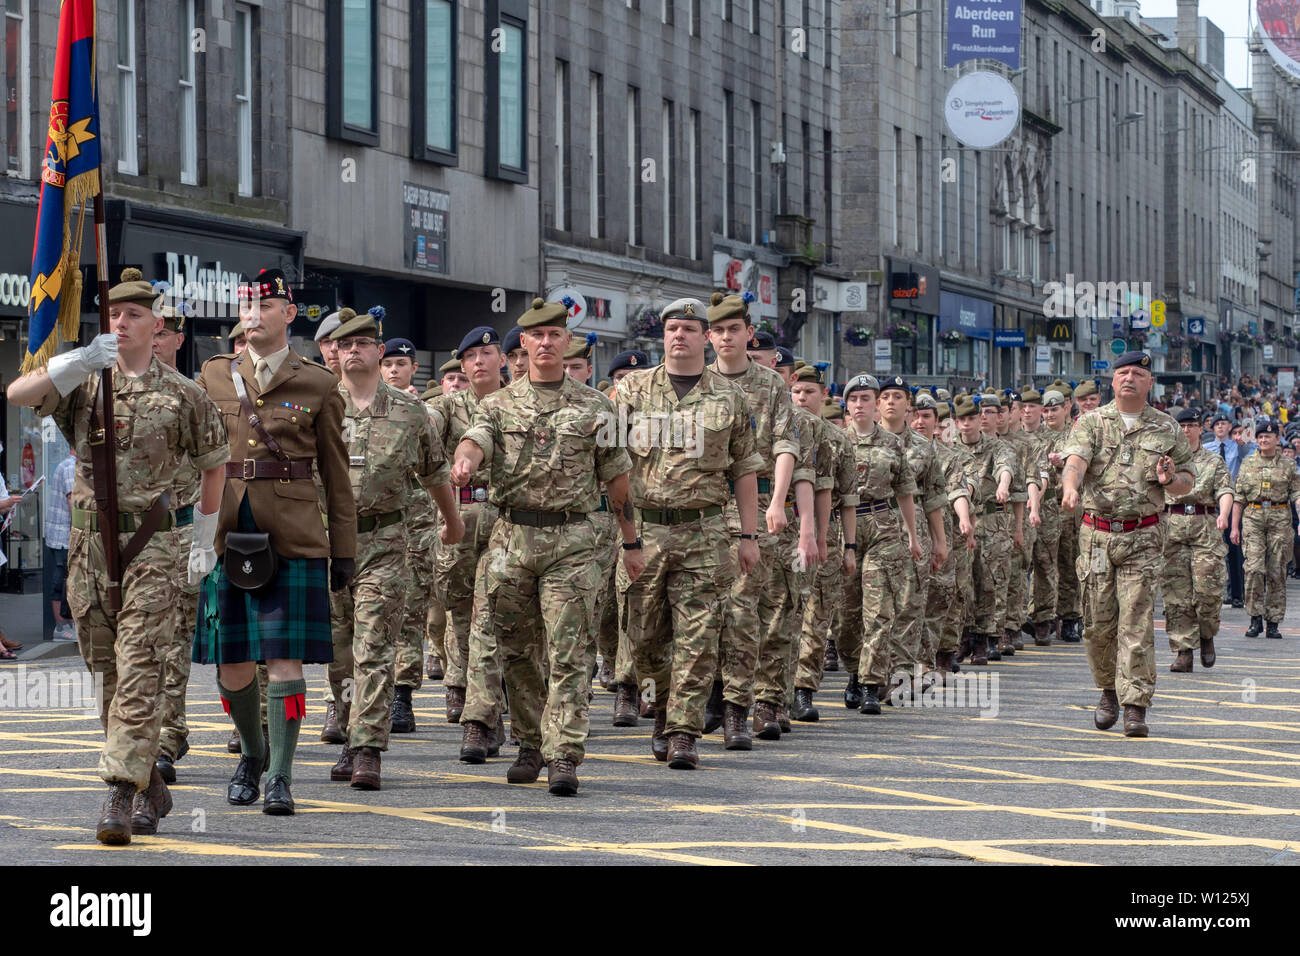 Aberdeen, Scozia - Giugno 29th, 2019: il personale militare, veterani e cadetti sfilando su Union Street, Aberdeen, per contrassegnare le Forze Armate giorno nel Regno Unito. Foto Stock